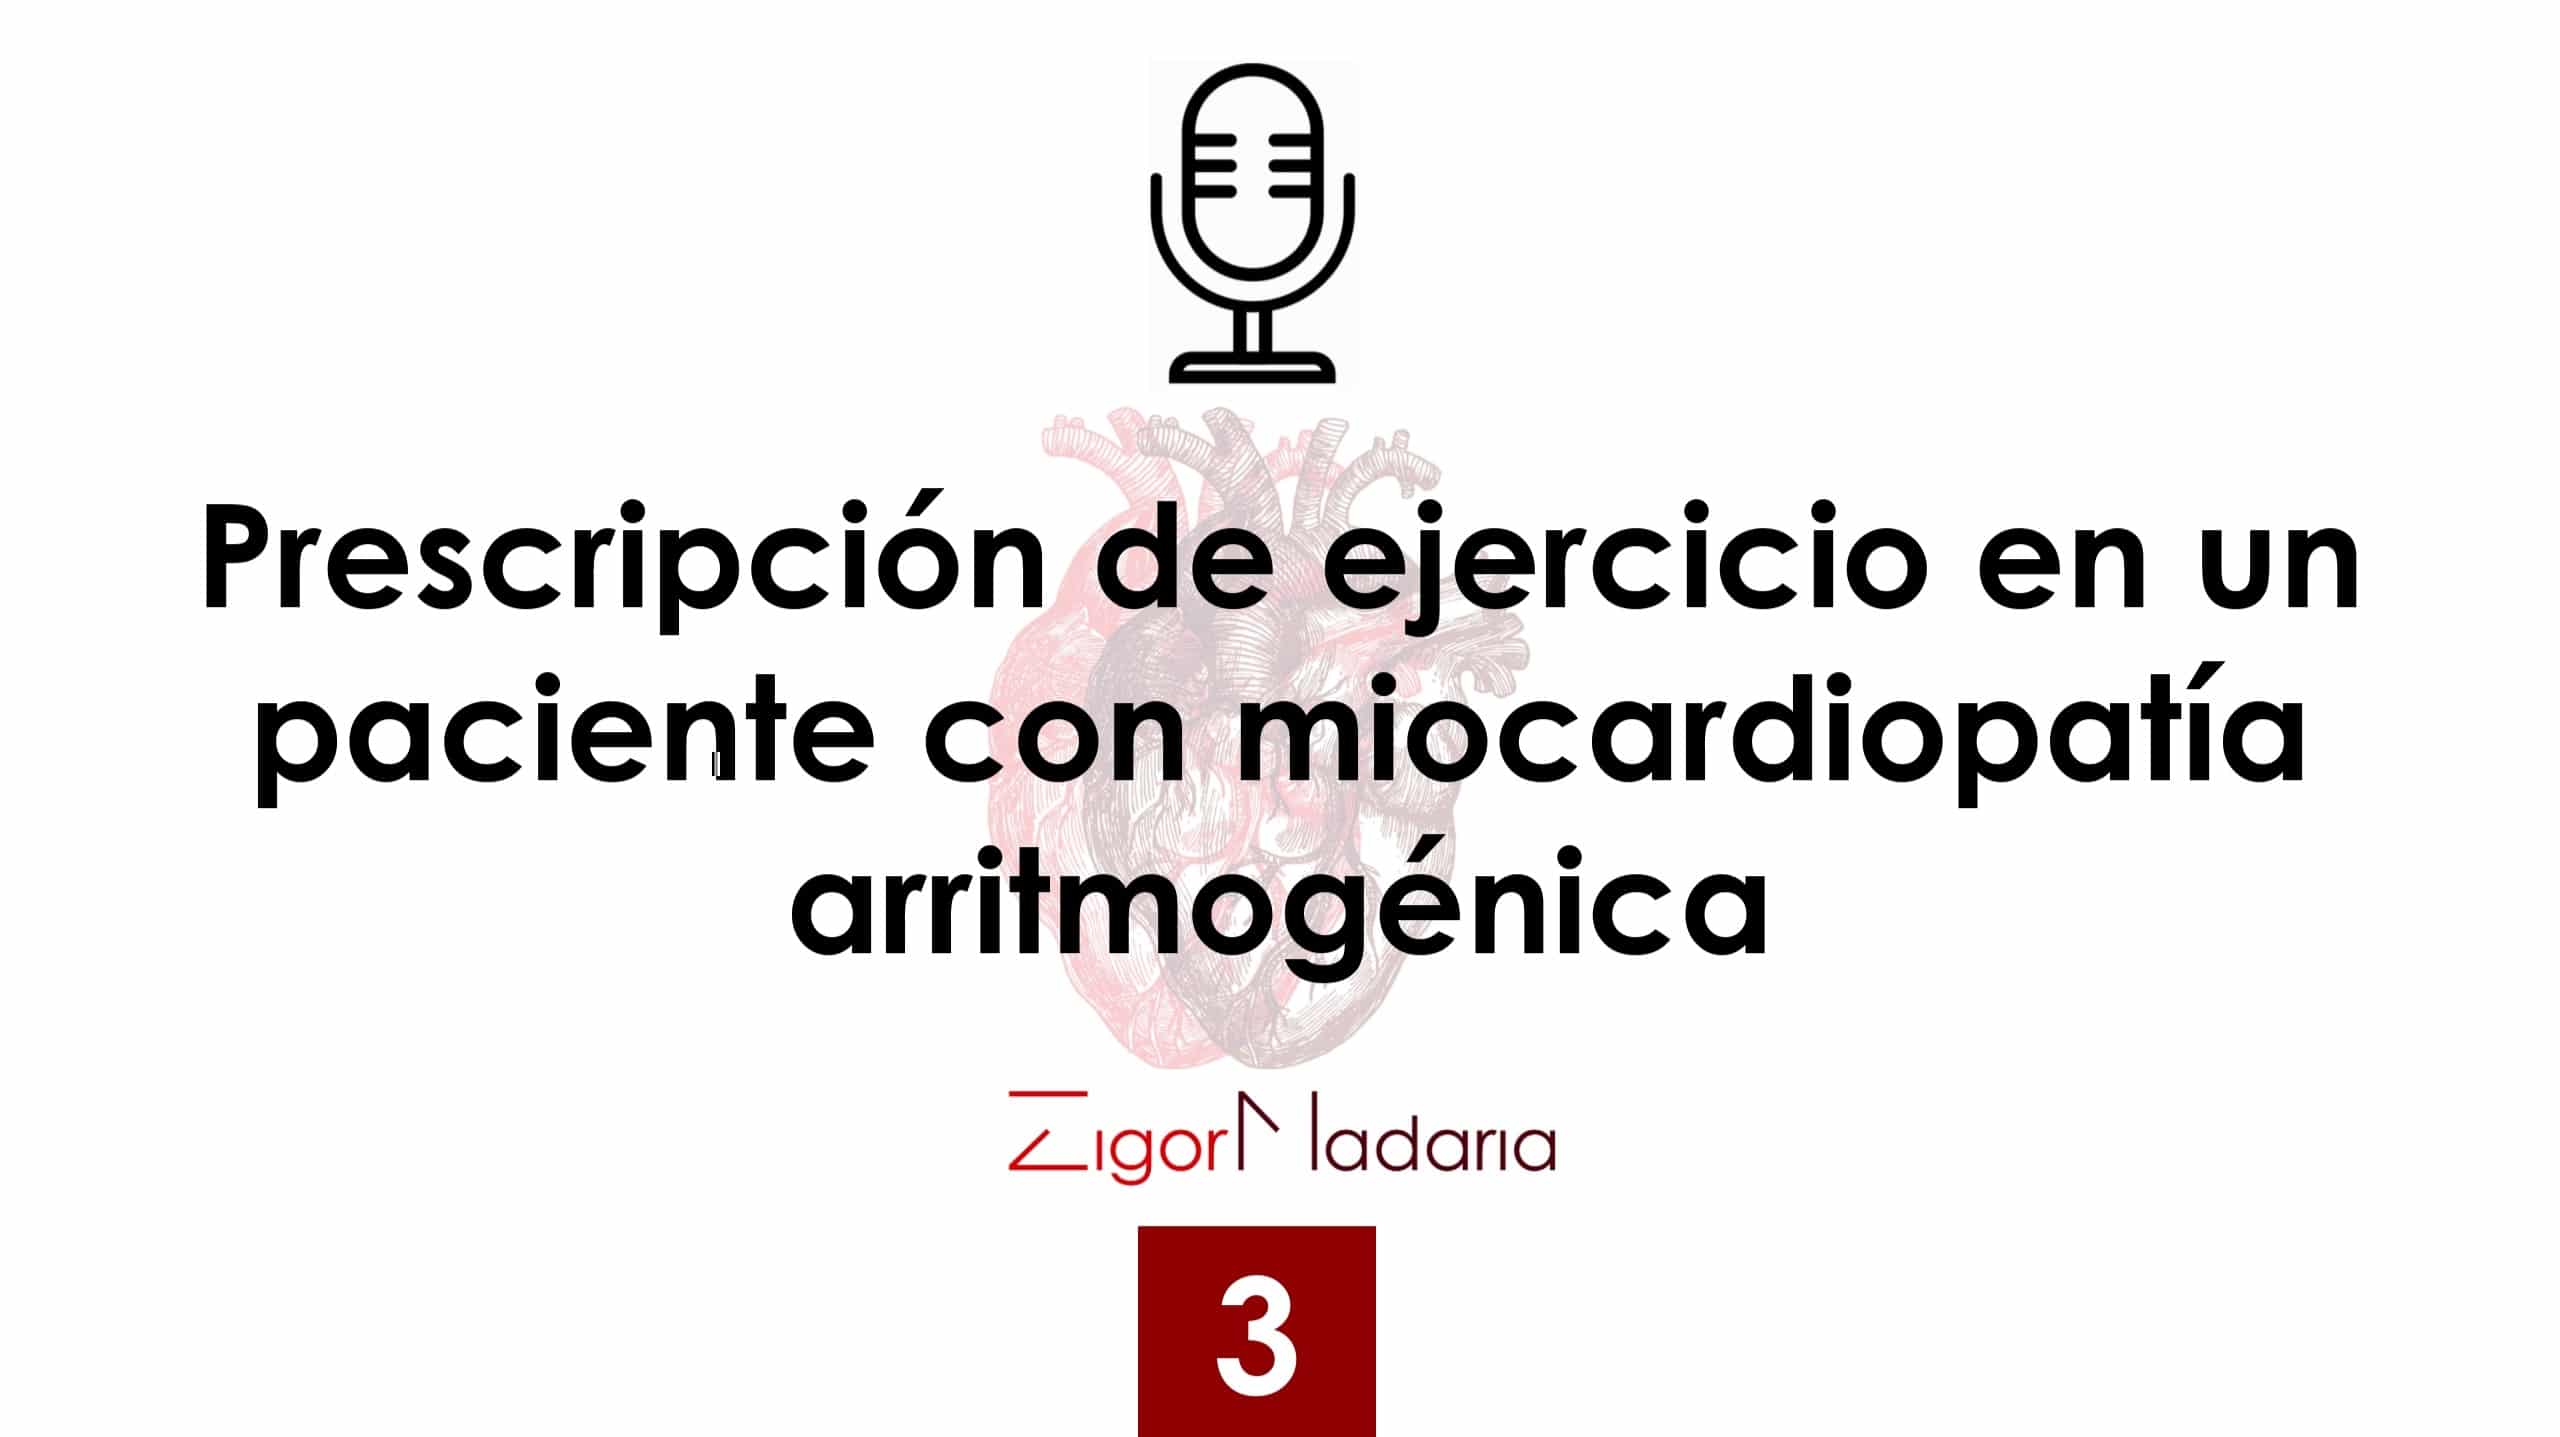 3. Prescripción de ejercicio en un paciente con miocardiopatía arritmogénica